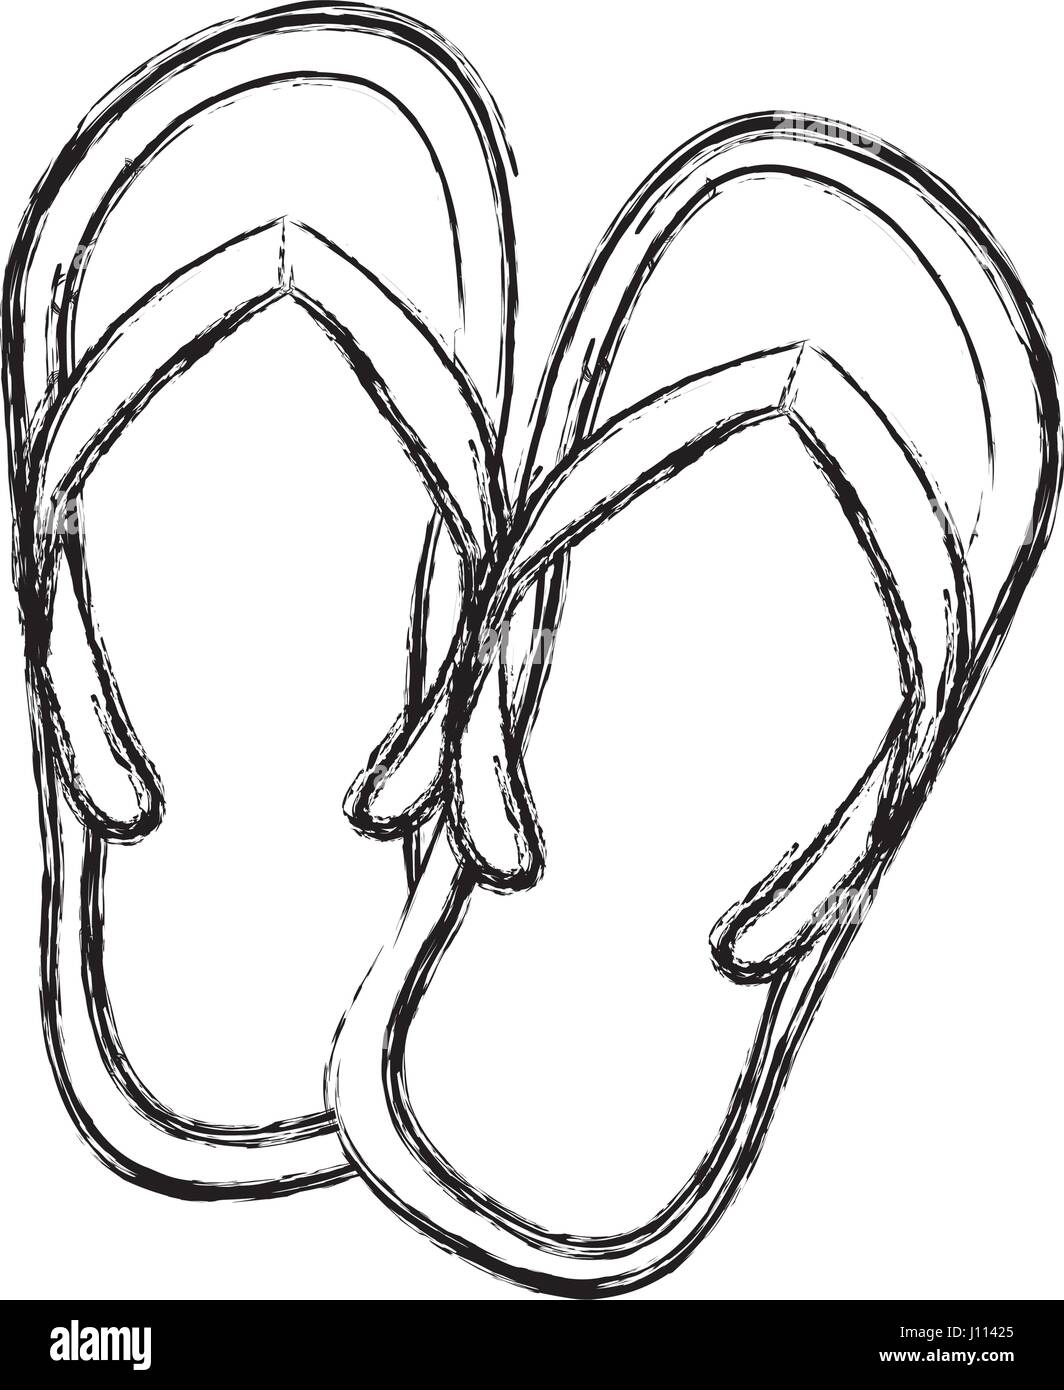 sketch flip flops